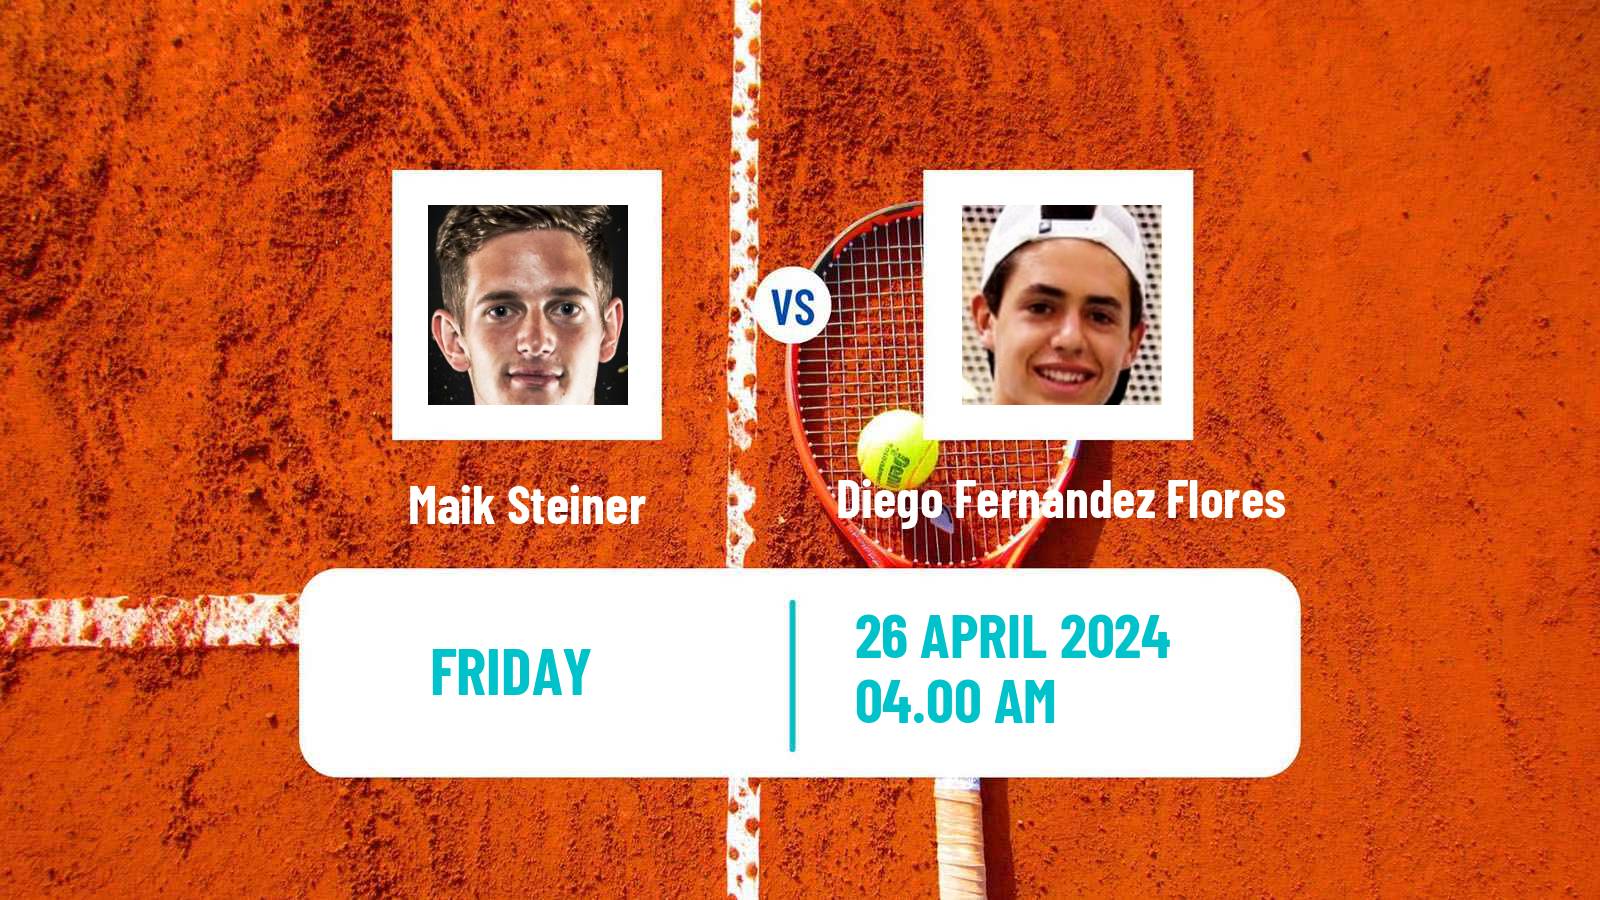 Tennis ITF M15 Sanxenxo Men Maik Steiner - Diego Fernandez Flores